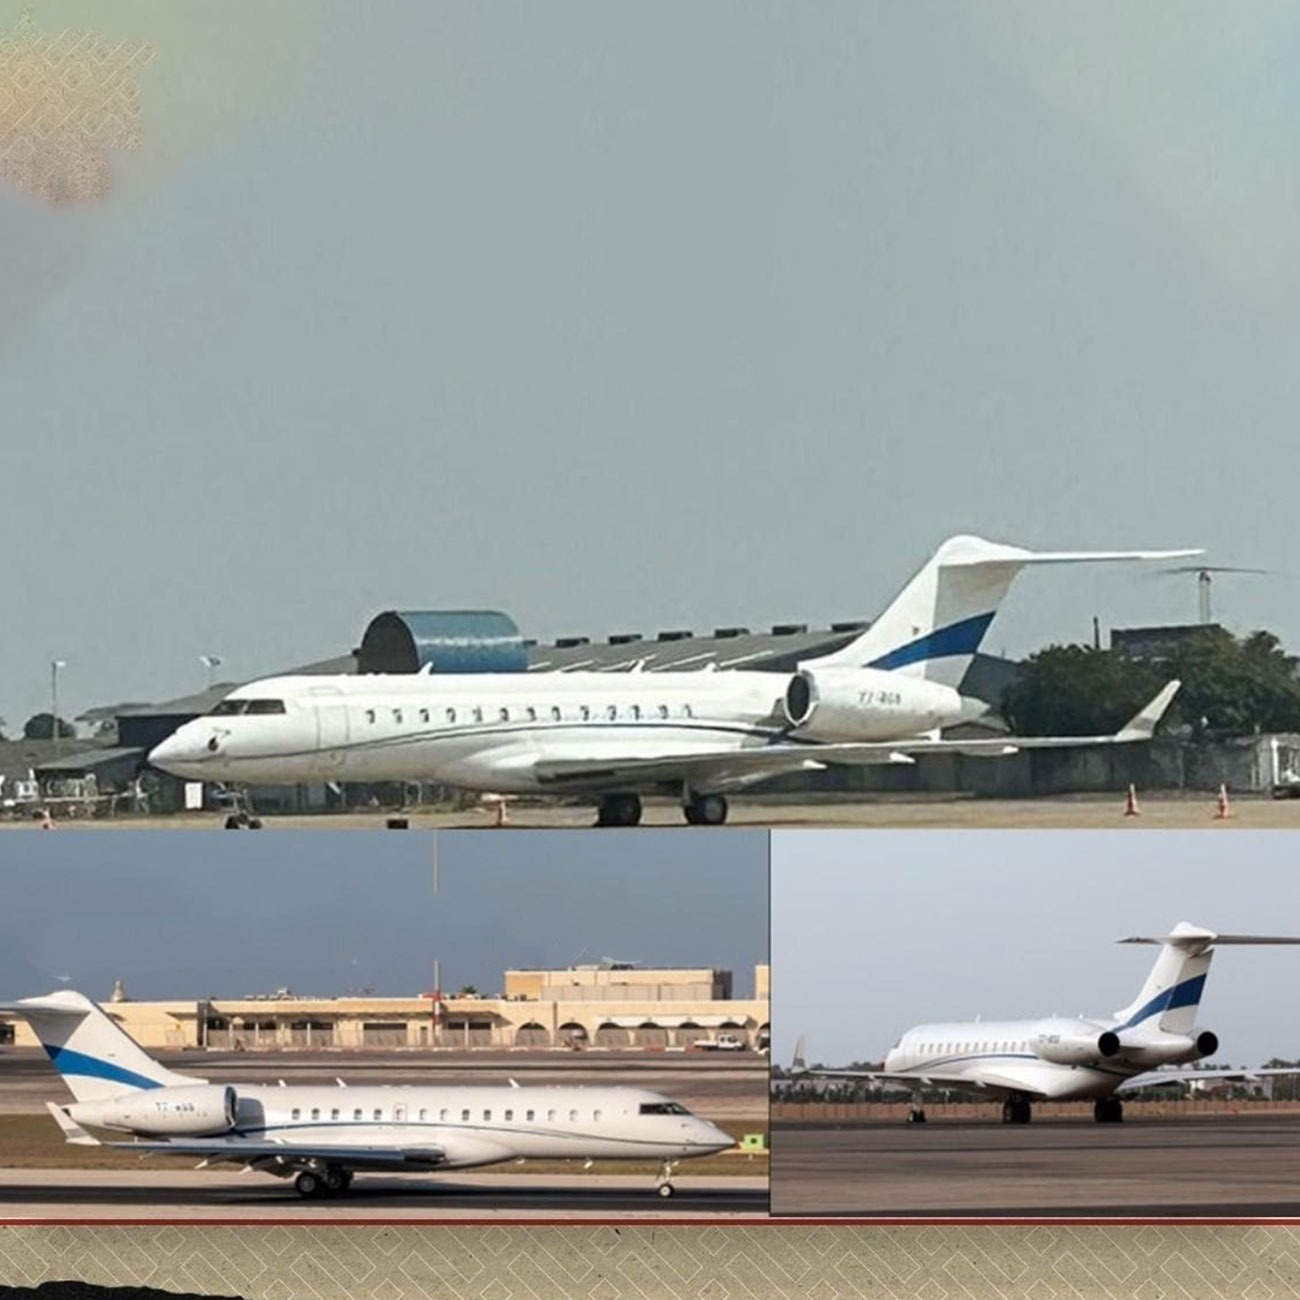 الطائرة المحتجزة في زامبيا